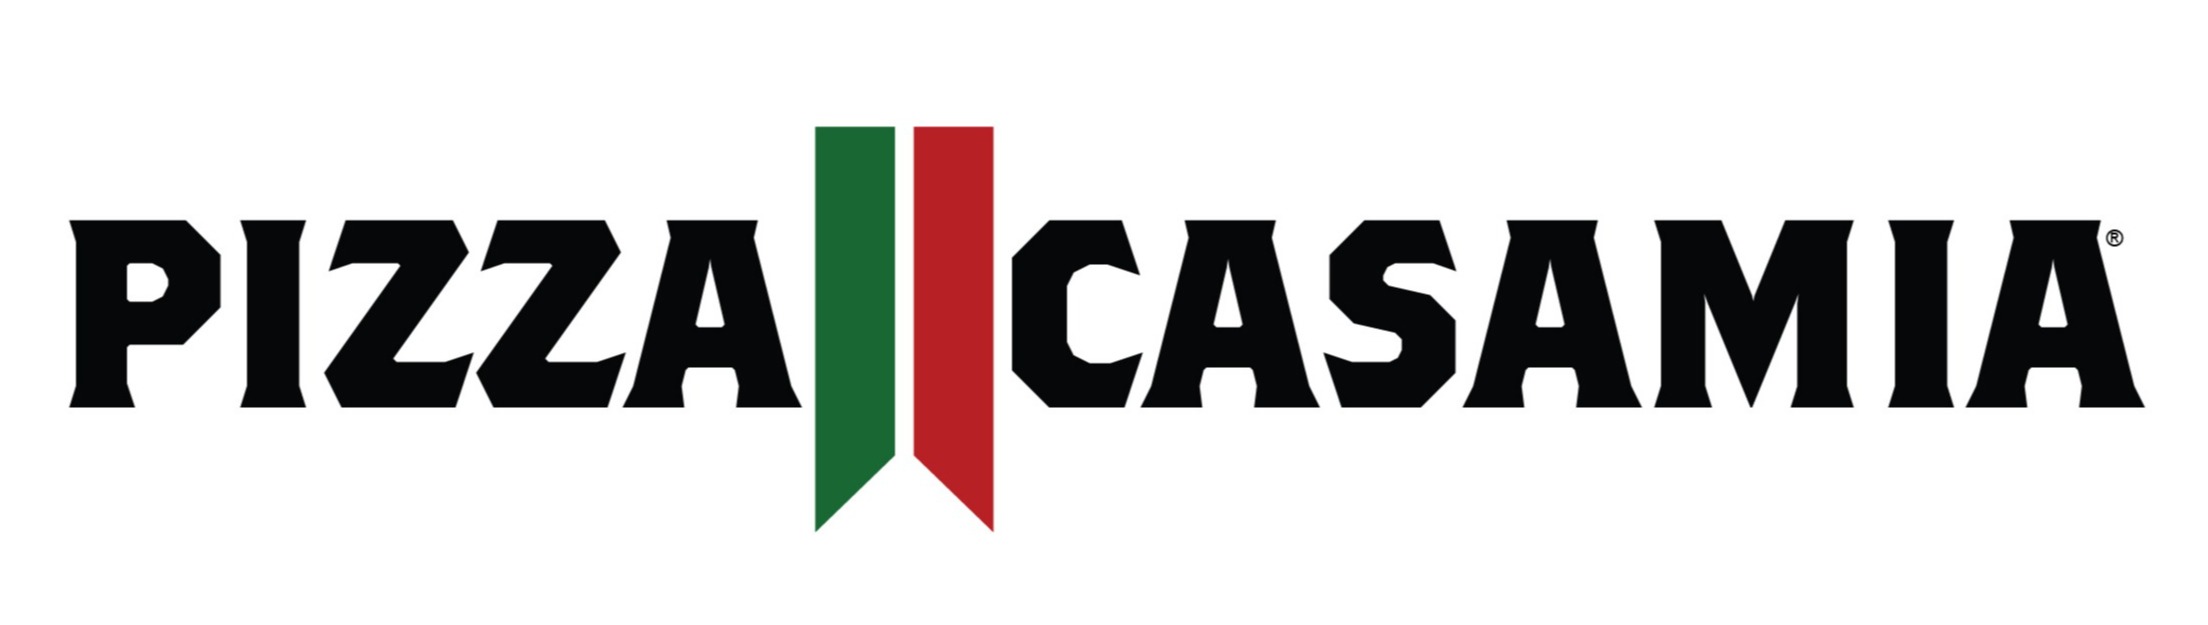 pizza casamia Logo